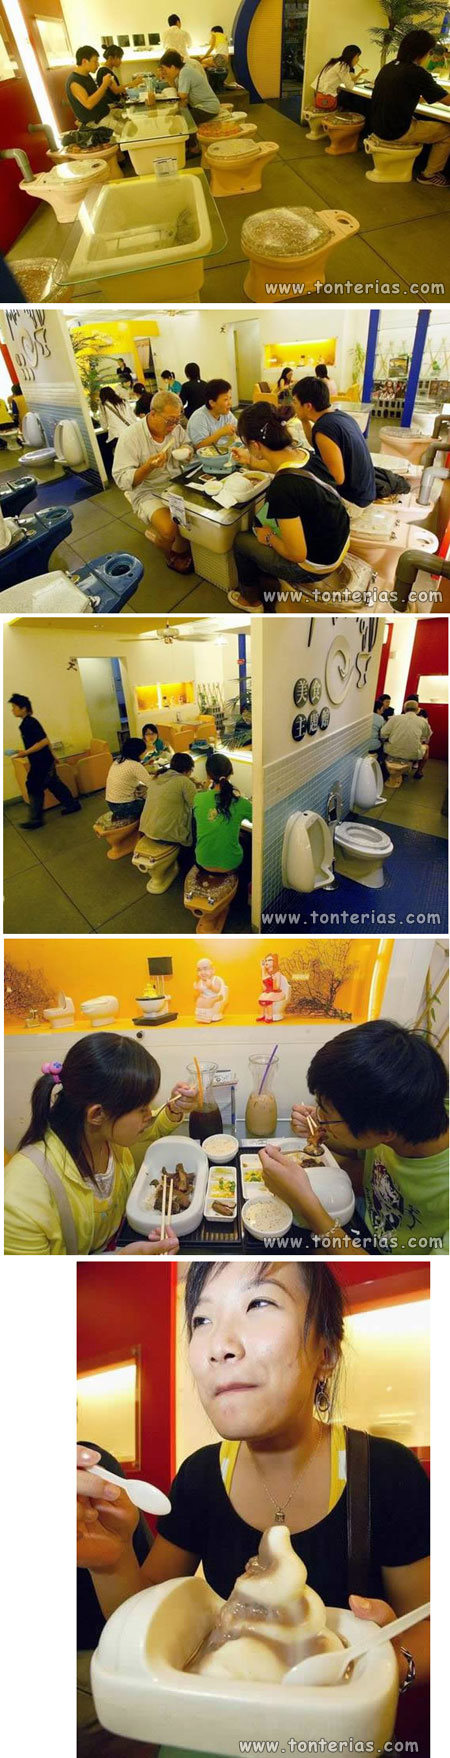 Restaurante WC